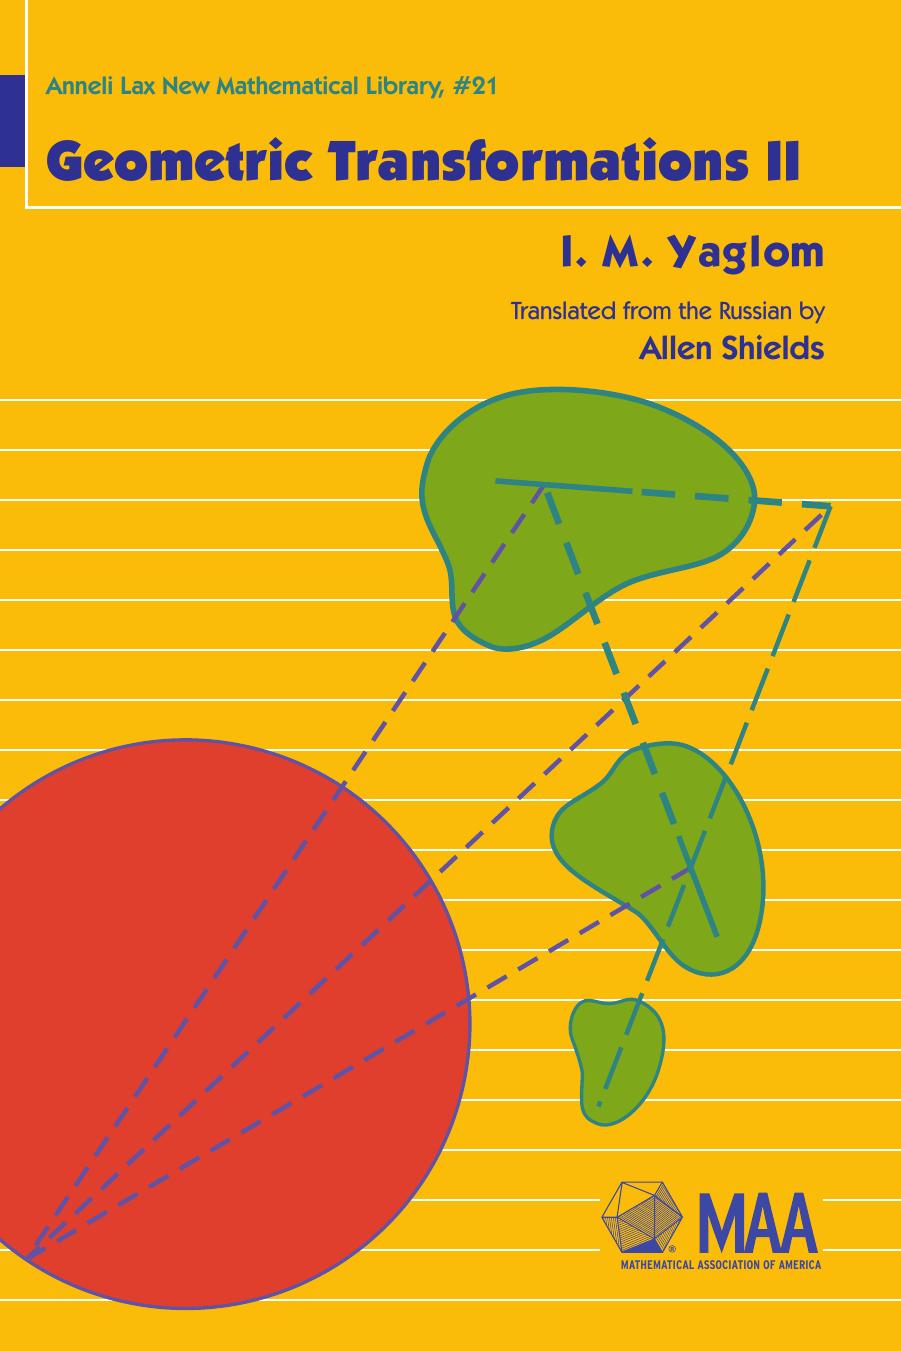 Geometric Transformations II by I. M. Yaglom